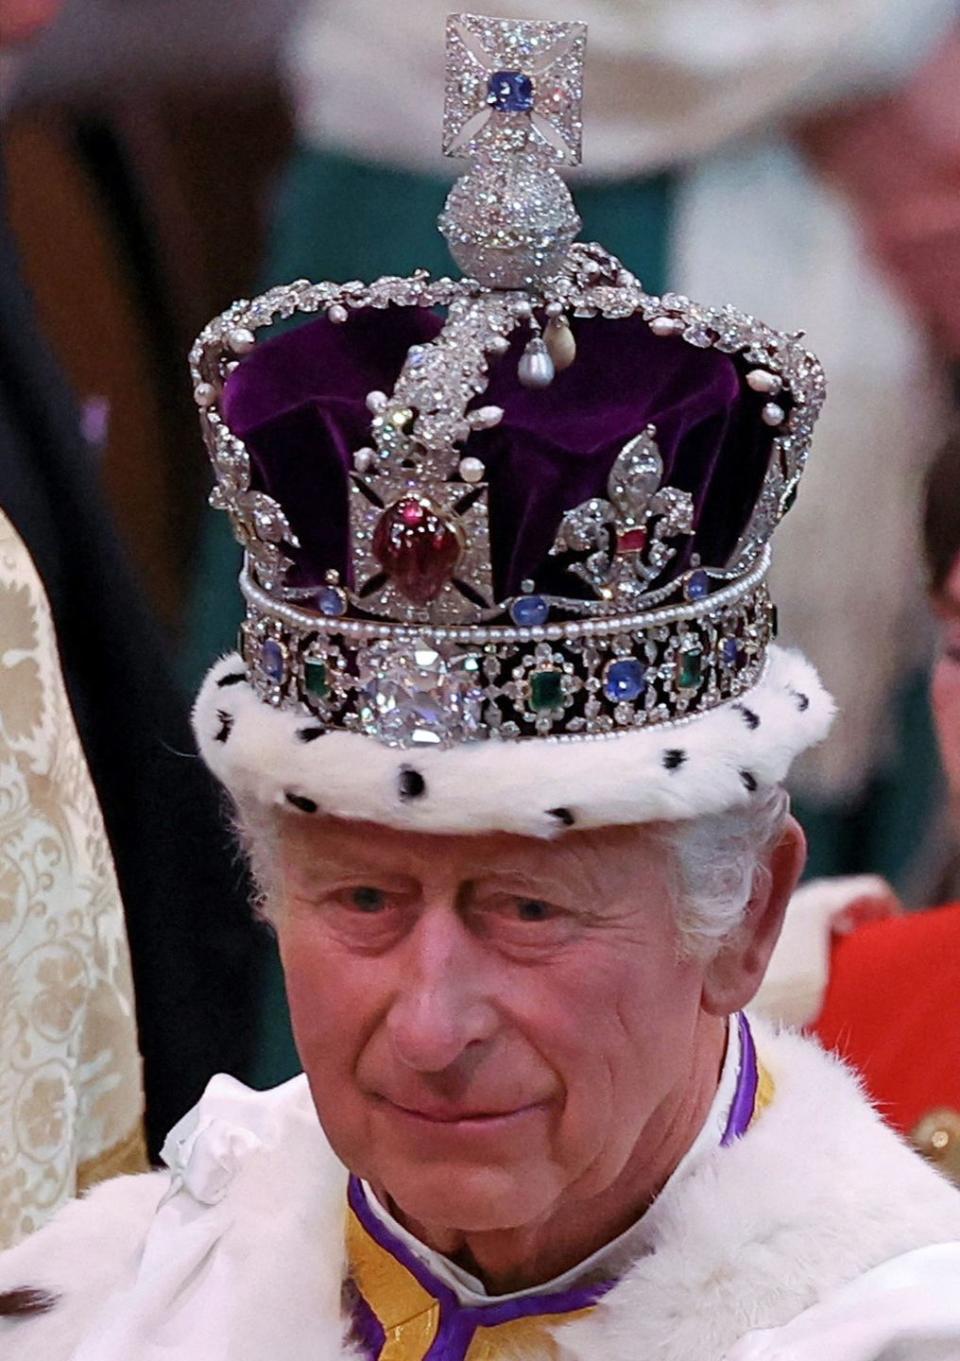 King Charles III is crowned King